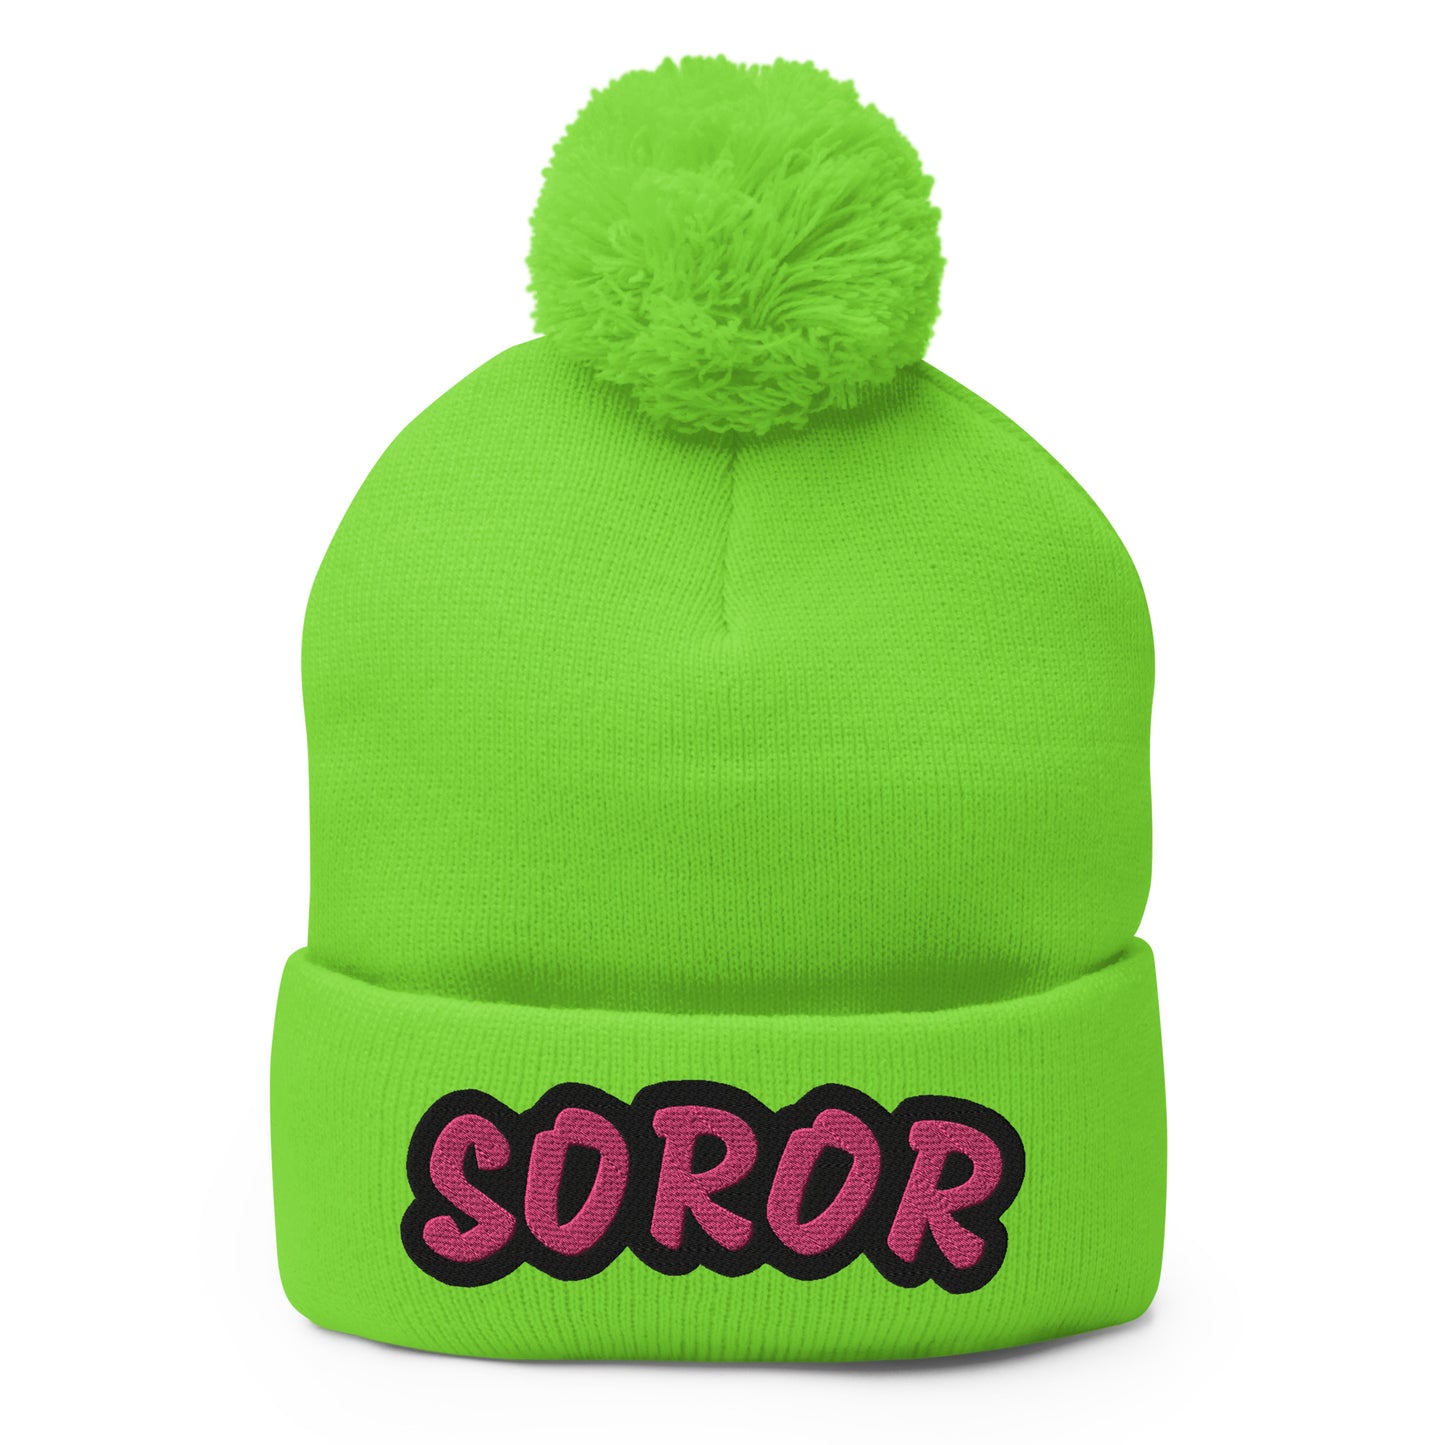 Soror Pom-Pom Beanie (green)